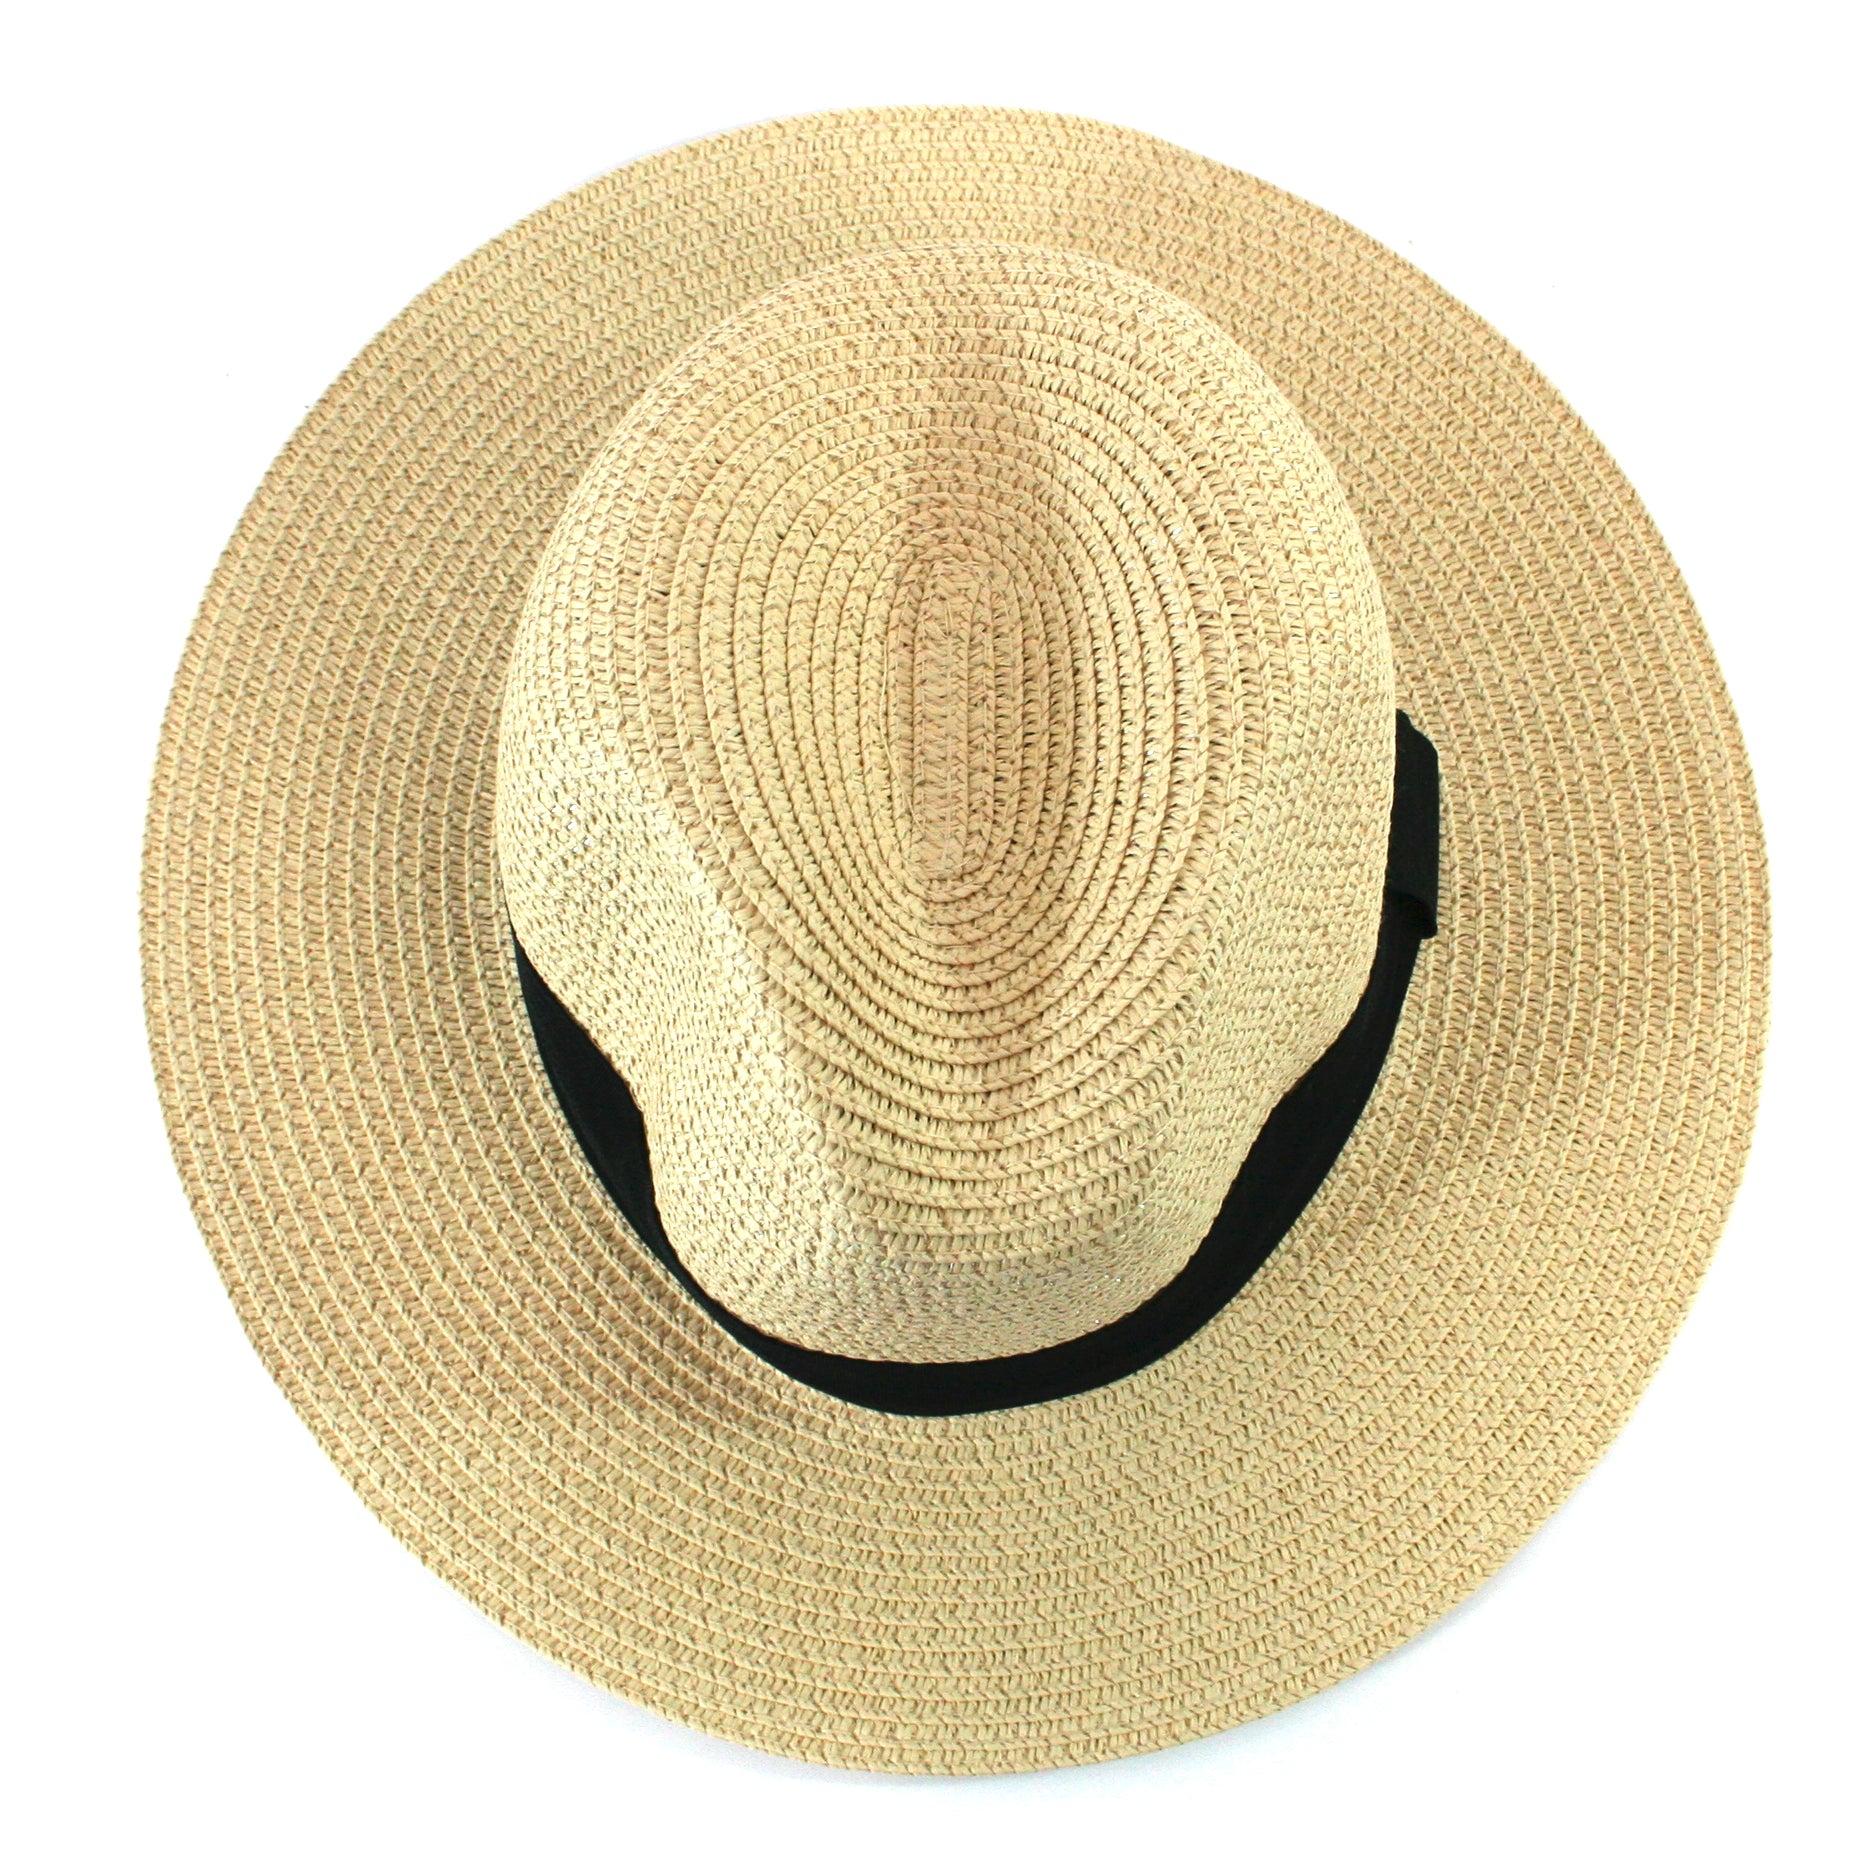 Chapeau de soleil pliable style Panama dans un sac – Moyen (57 cm)